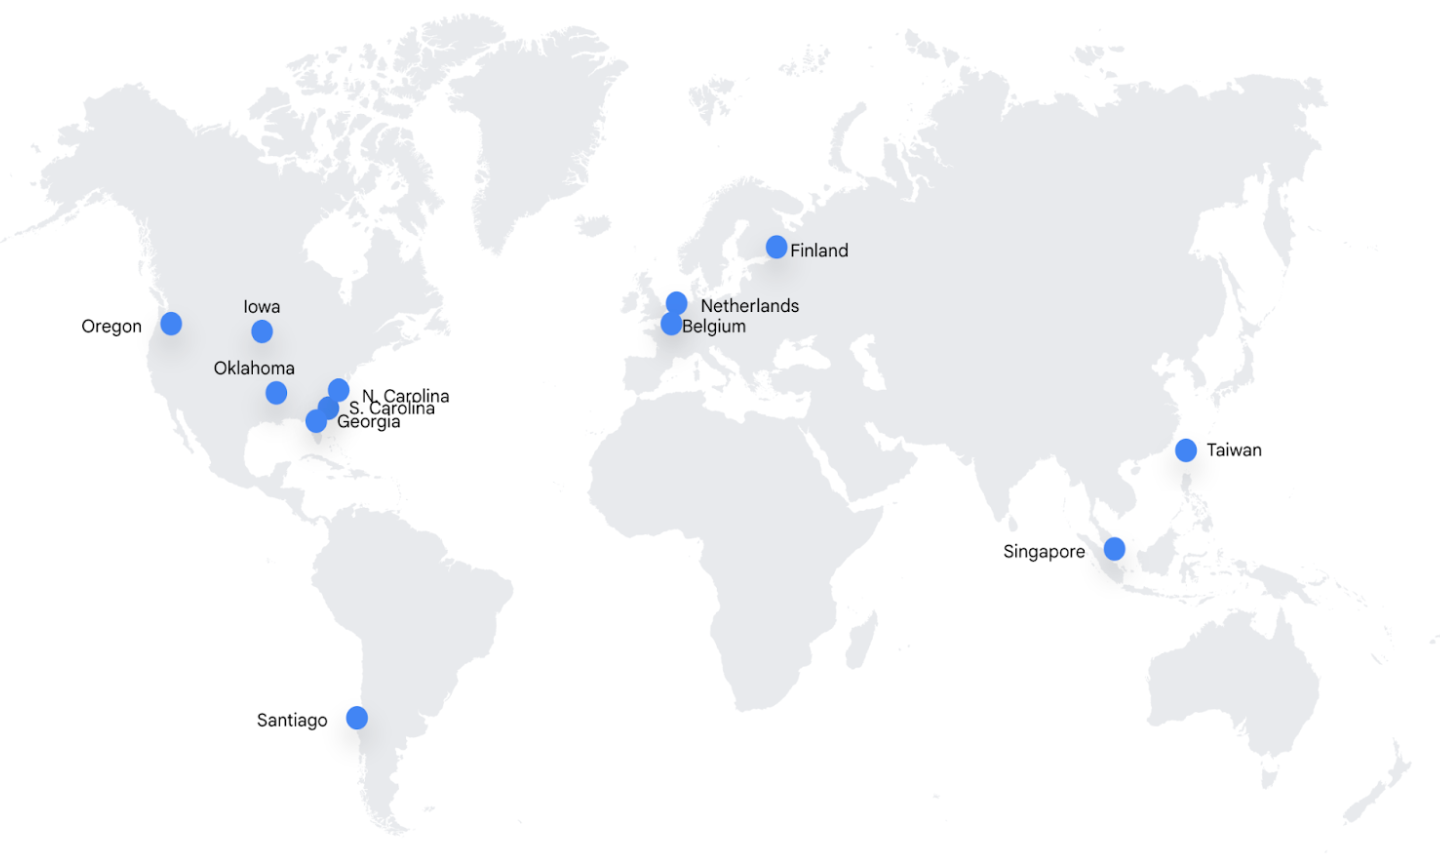 แผนที่โลกแสดงสถานที่ตั้งศูนย์ข้อมูลเป็นจุดสีน้ำเงิน